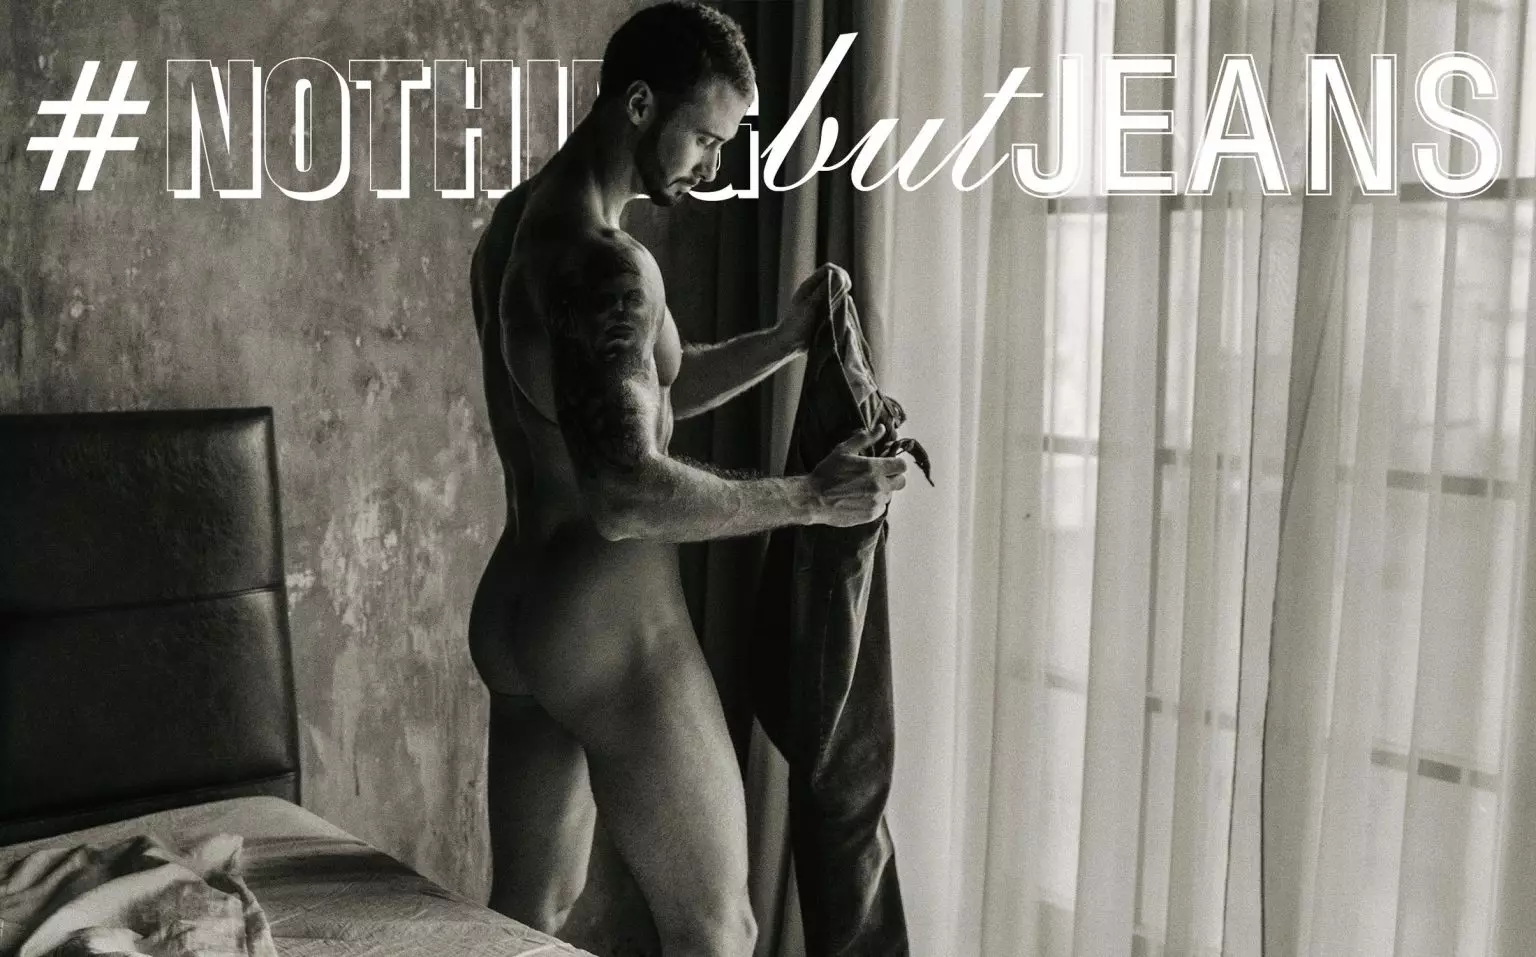 Serija #NothingButJeans avtorja Serge Lee z Vladimirjem Zloyem Kaa